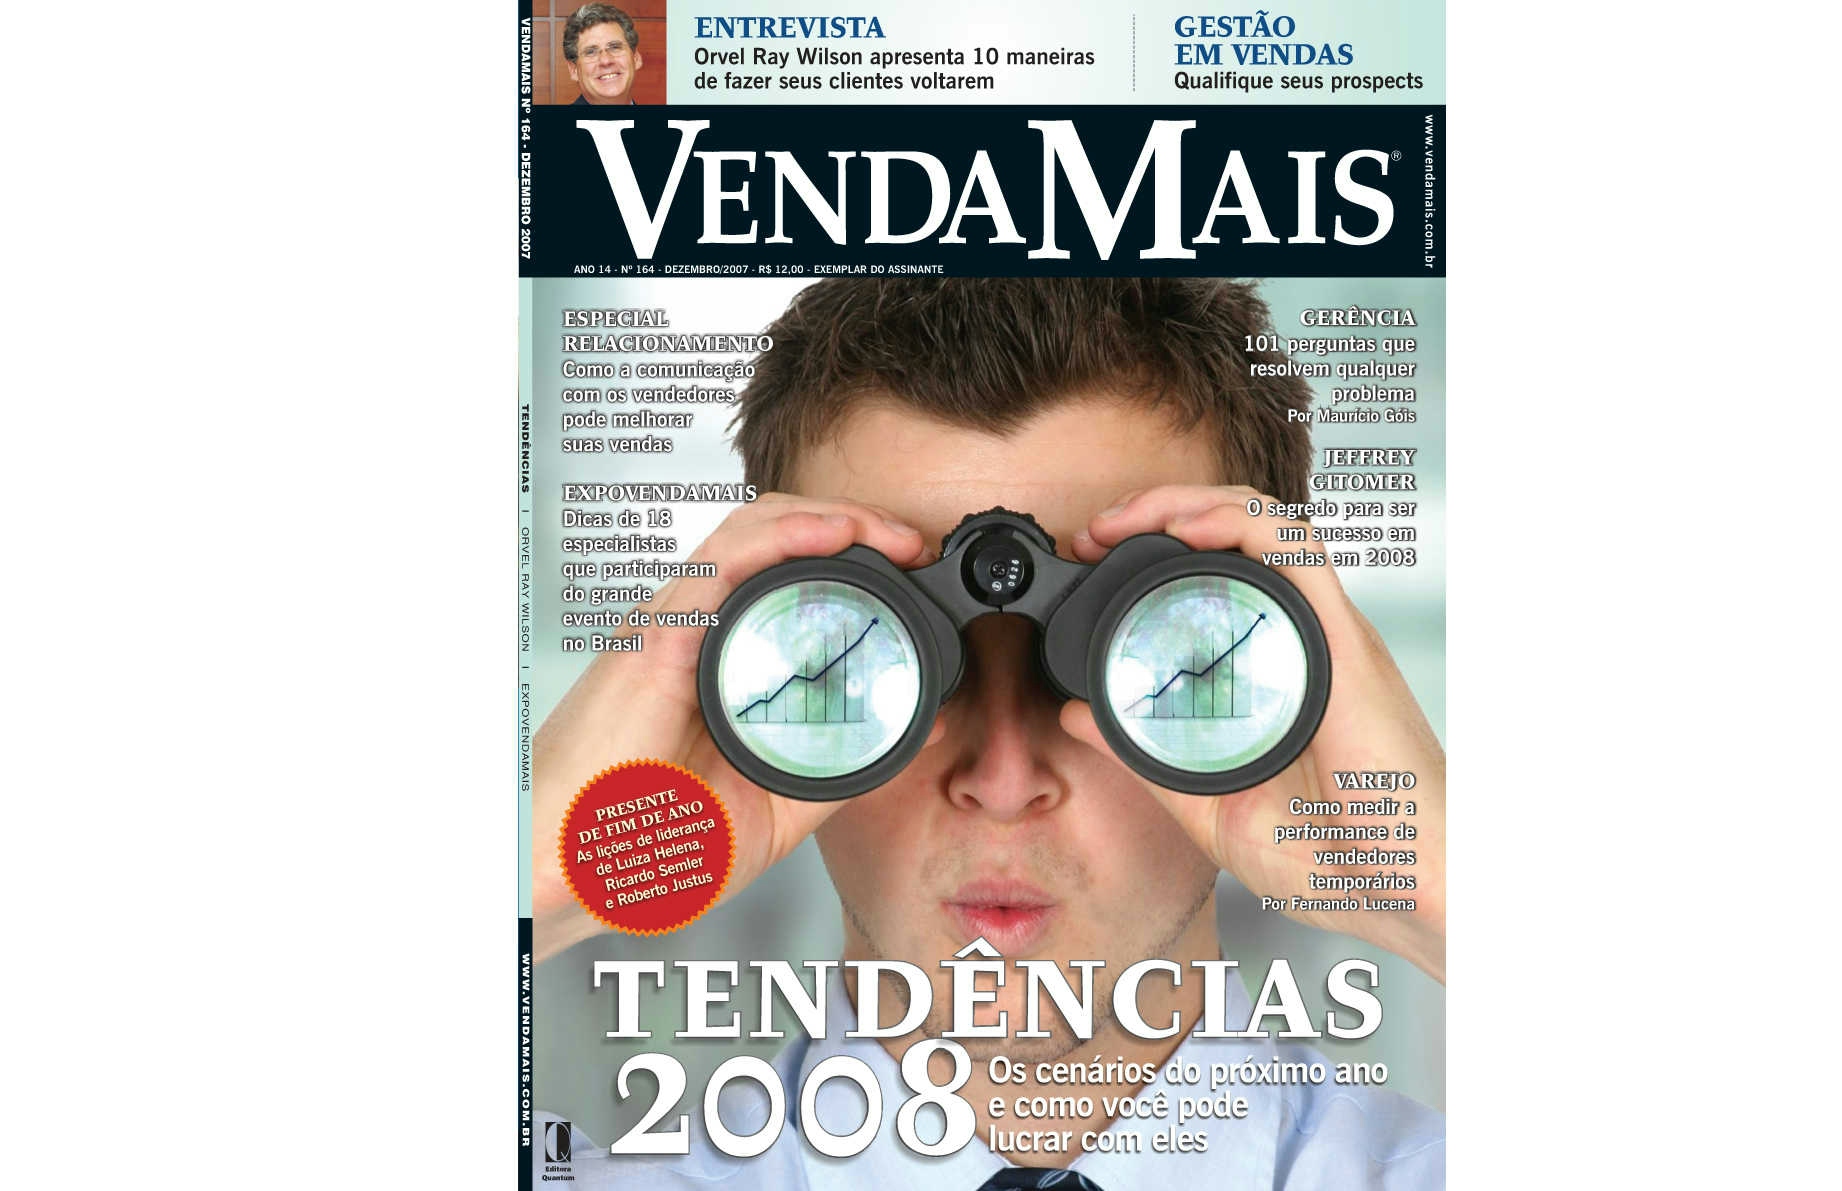 Cover image for timeline Revista Venda Mais